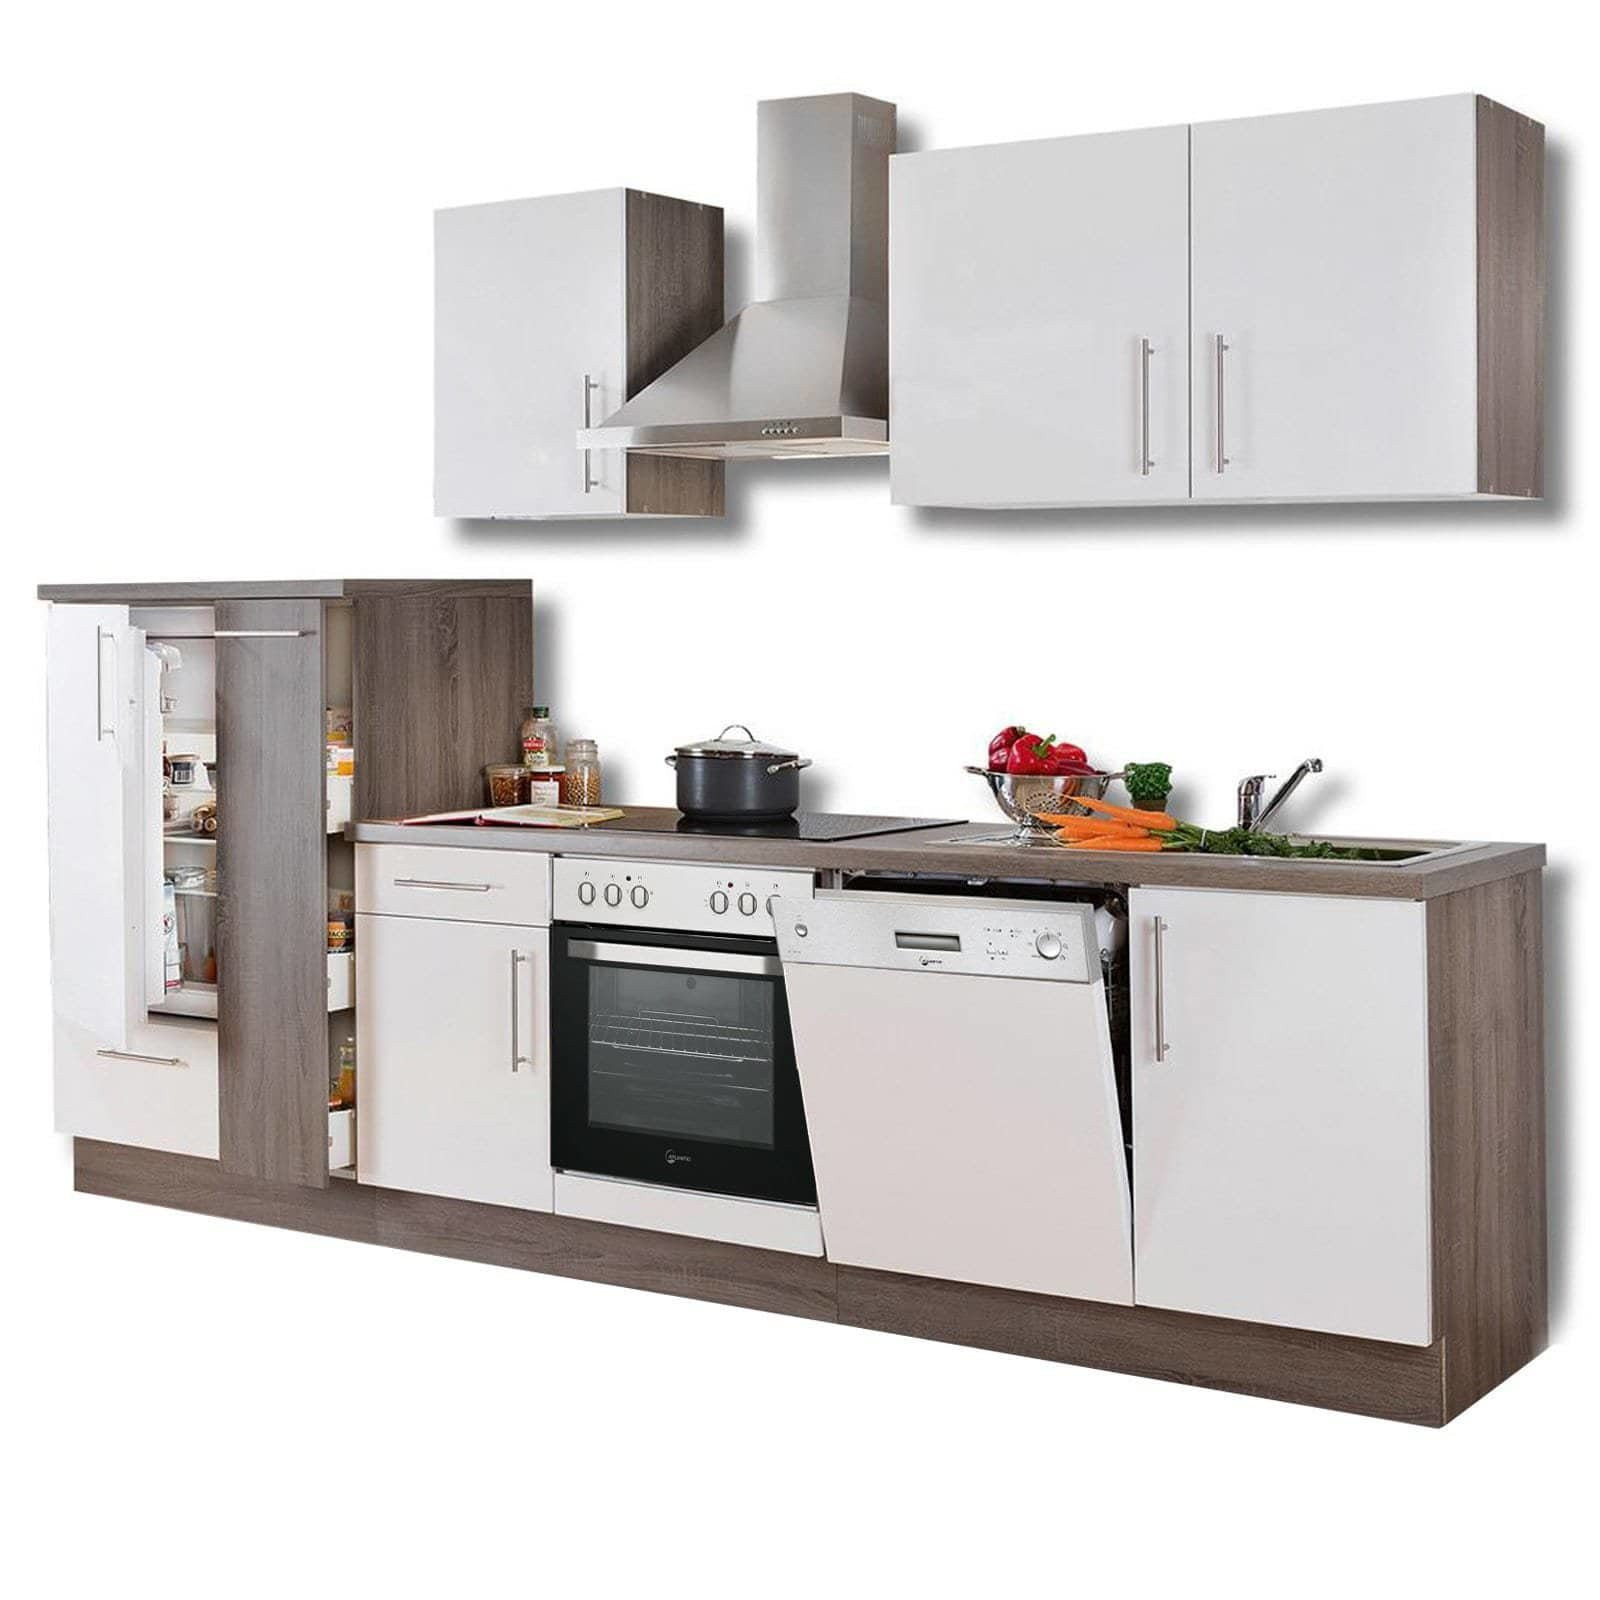 Küchenblock Mit Geräten
 Küchenblock JULIA weiß Hochglanz Trüffel mit E Geräten